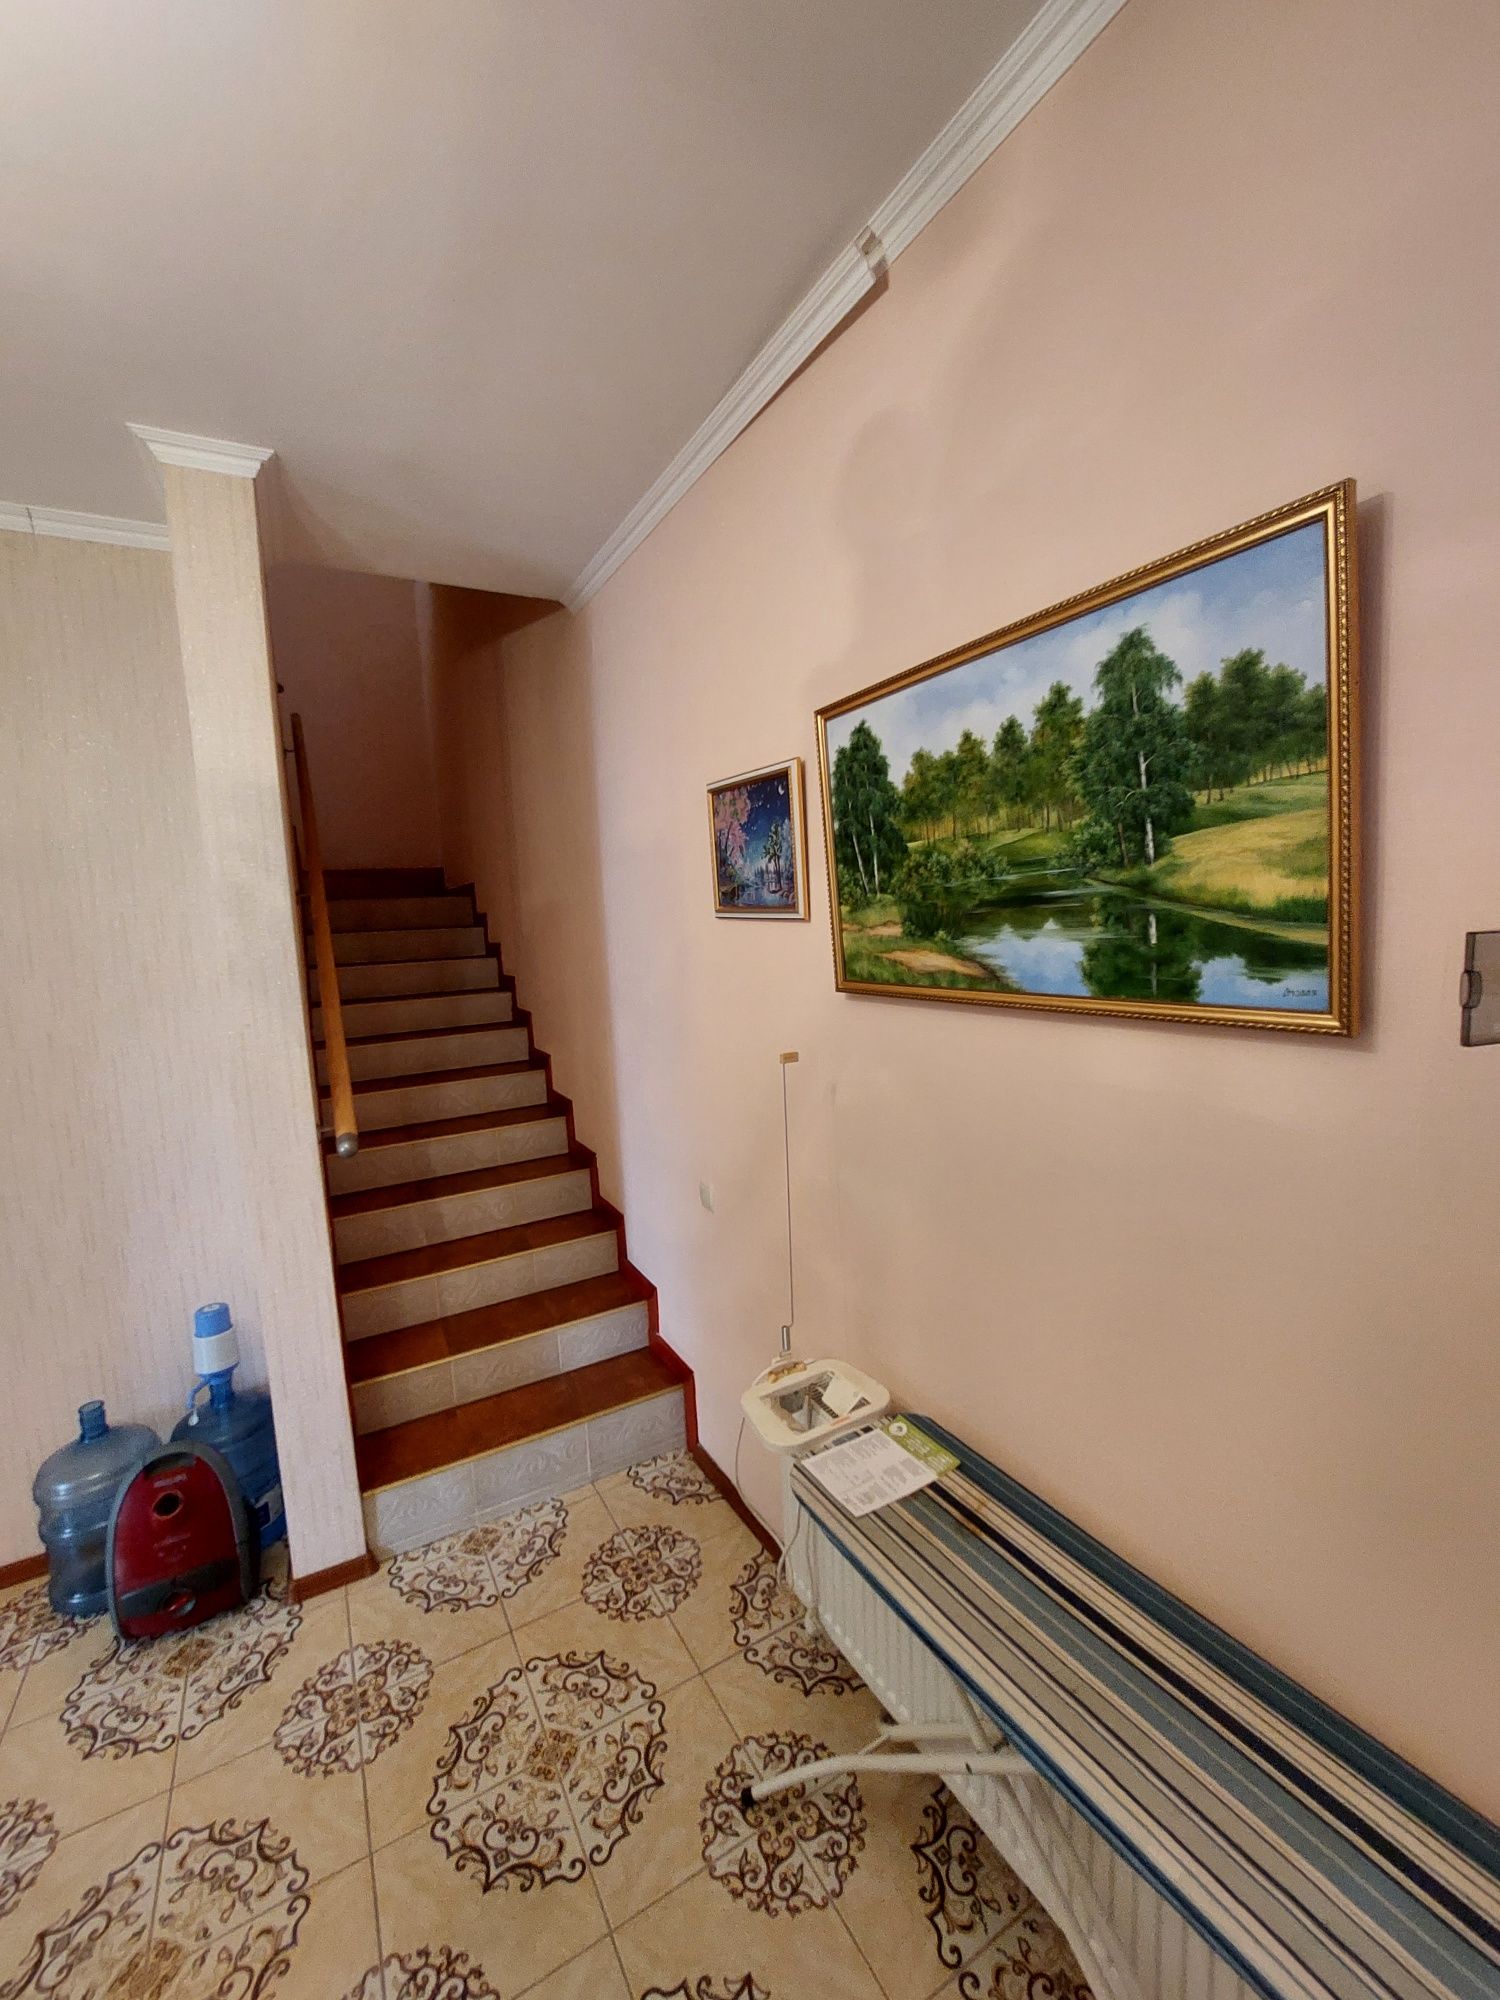 Оренда будинку у Миколаєві